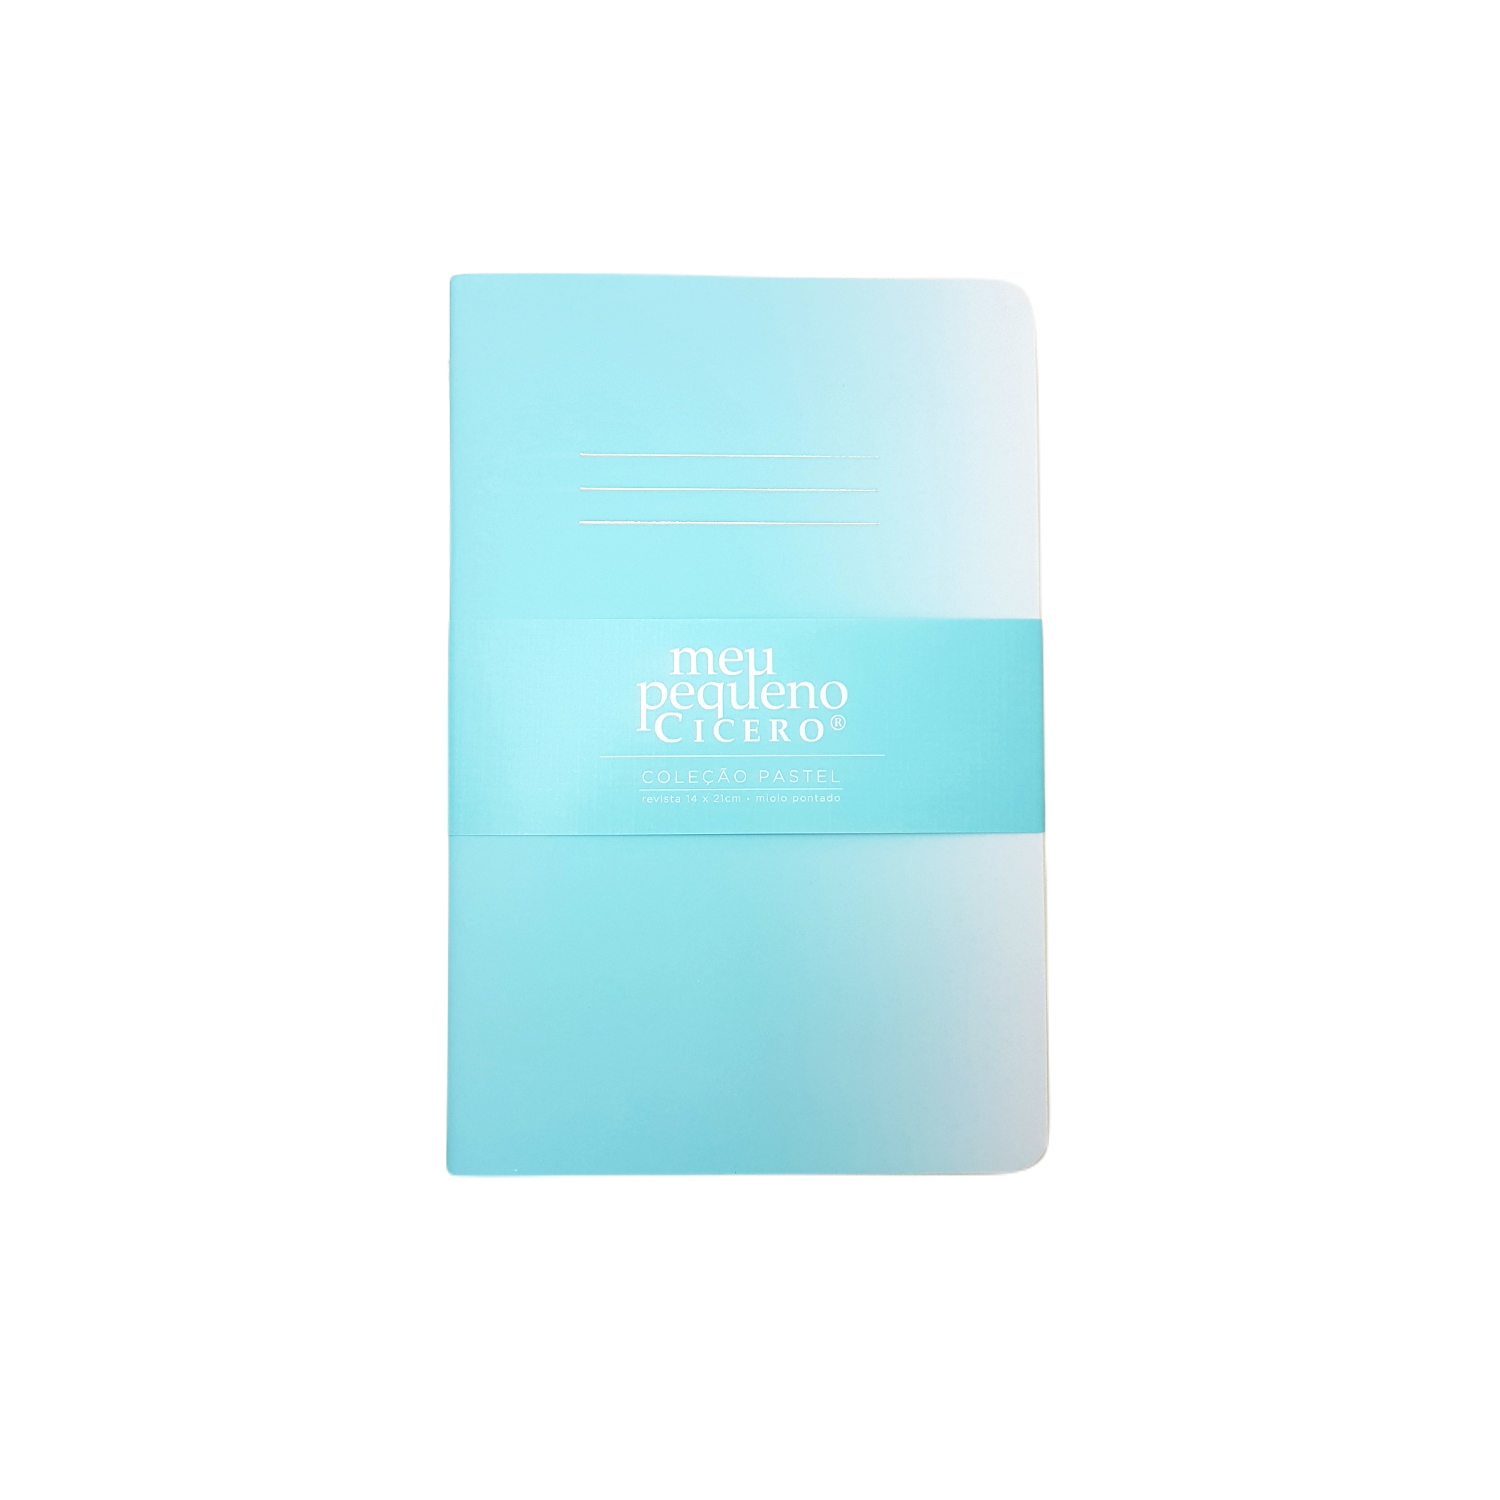 Caderno Cícero Revista Clássica Capa Flexível - Cor: Azul Tiffany